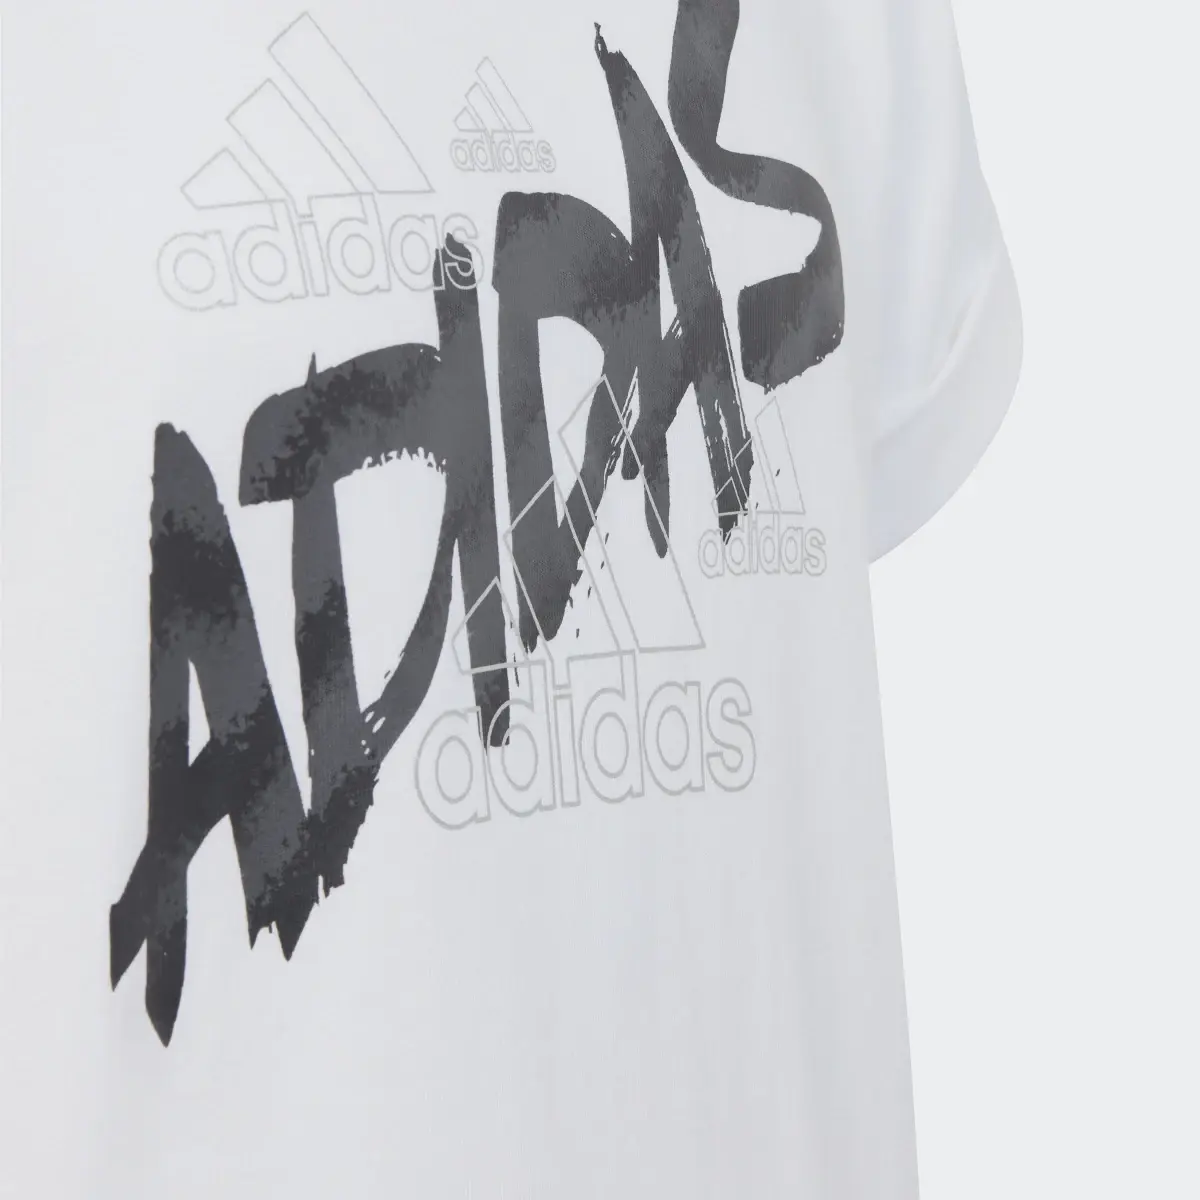 Adidas T-shirt Dance. 3